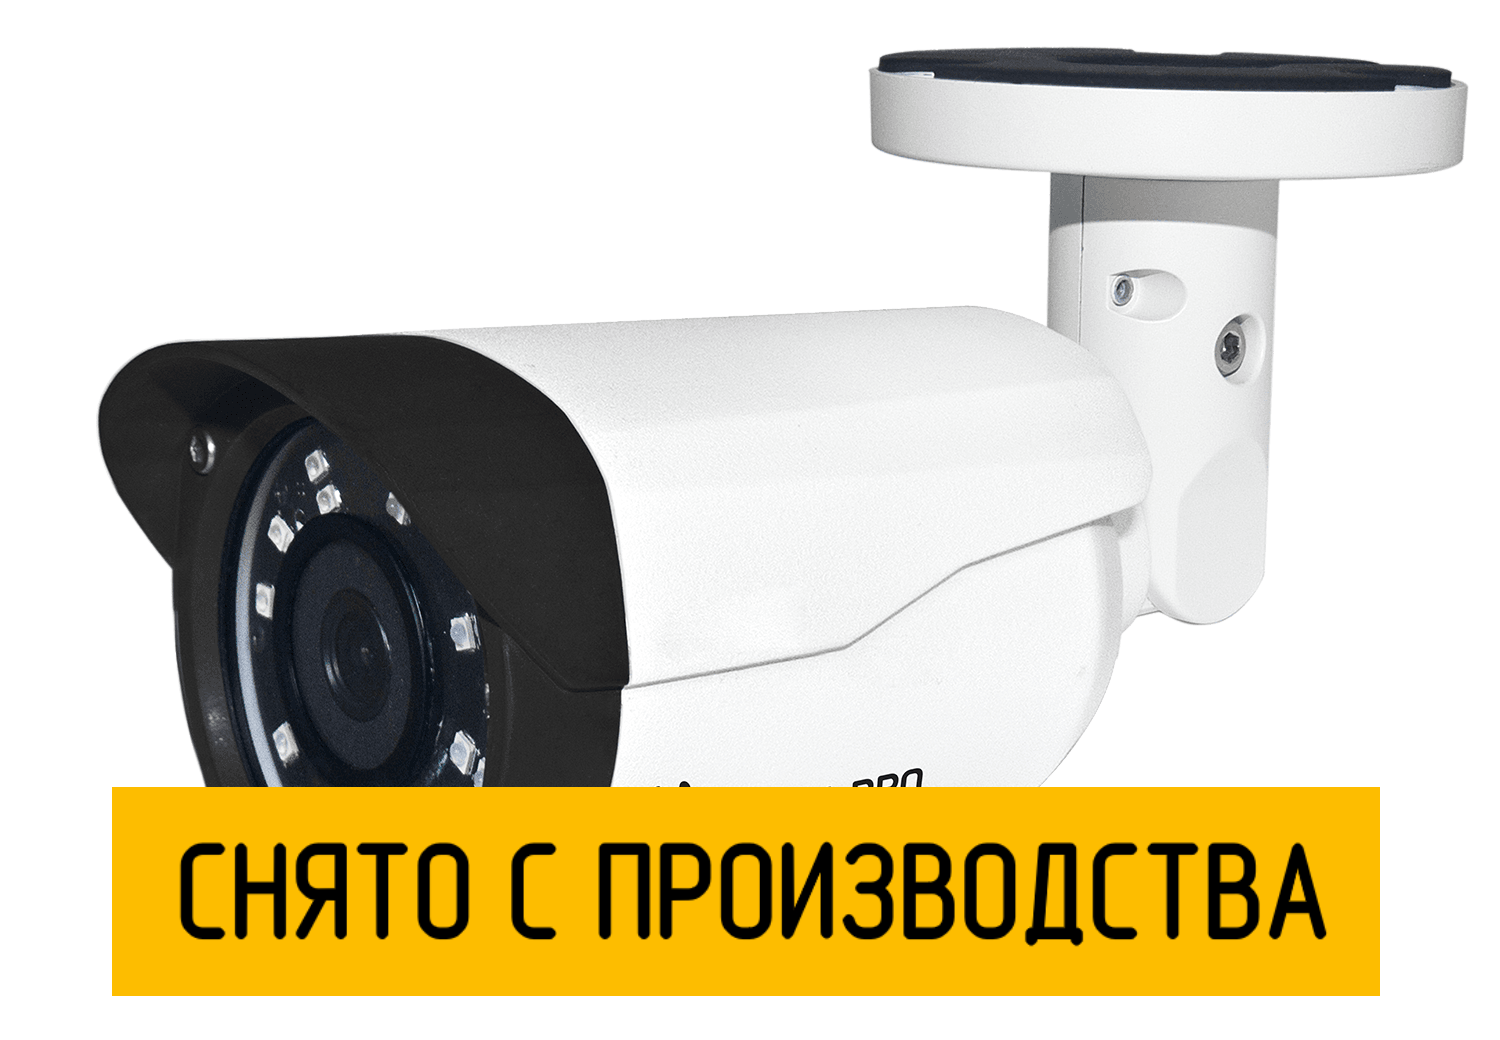 Цилиндрическая камера StreetCAM 1080m 2.8 мм